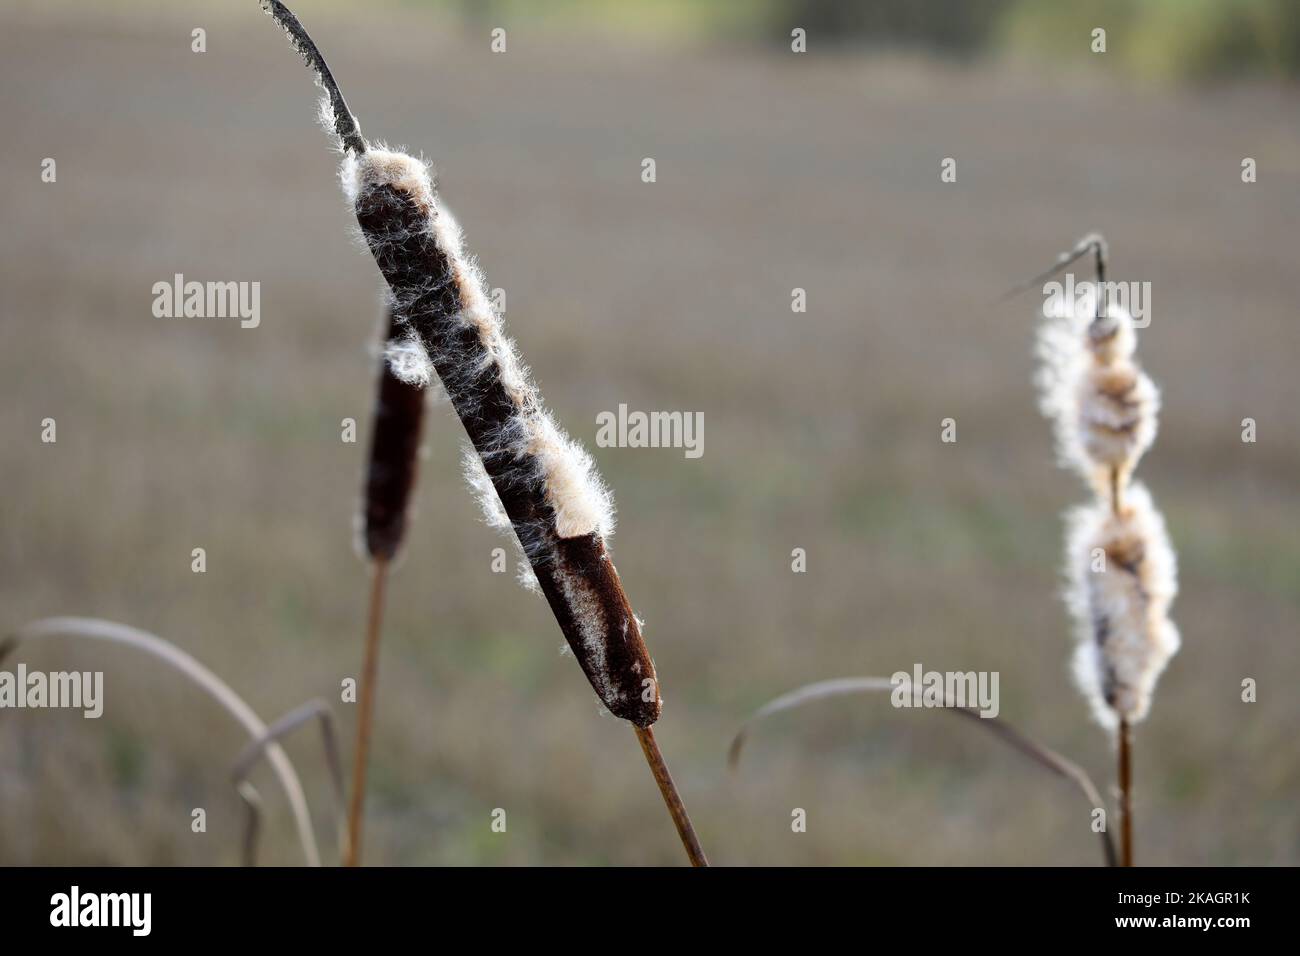 Des têtes de semis mûres de Typha latifolia, également appelées Bulrush ou Common Cattail, en hiver. Les peluches de coton se dispersent par le vent. DOF peu profond. Banque D'Images